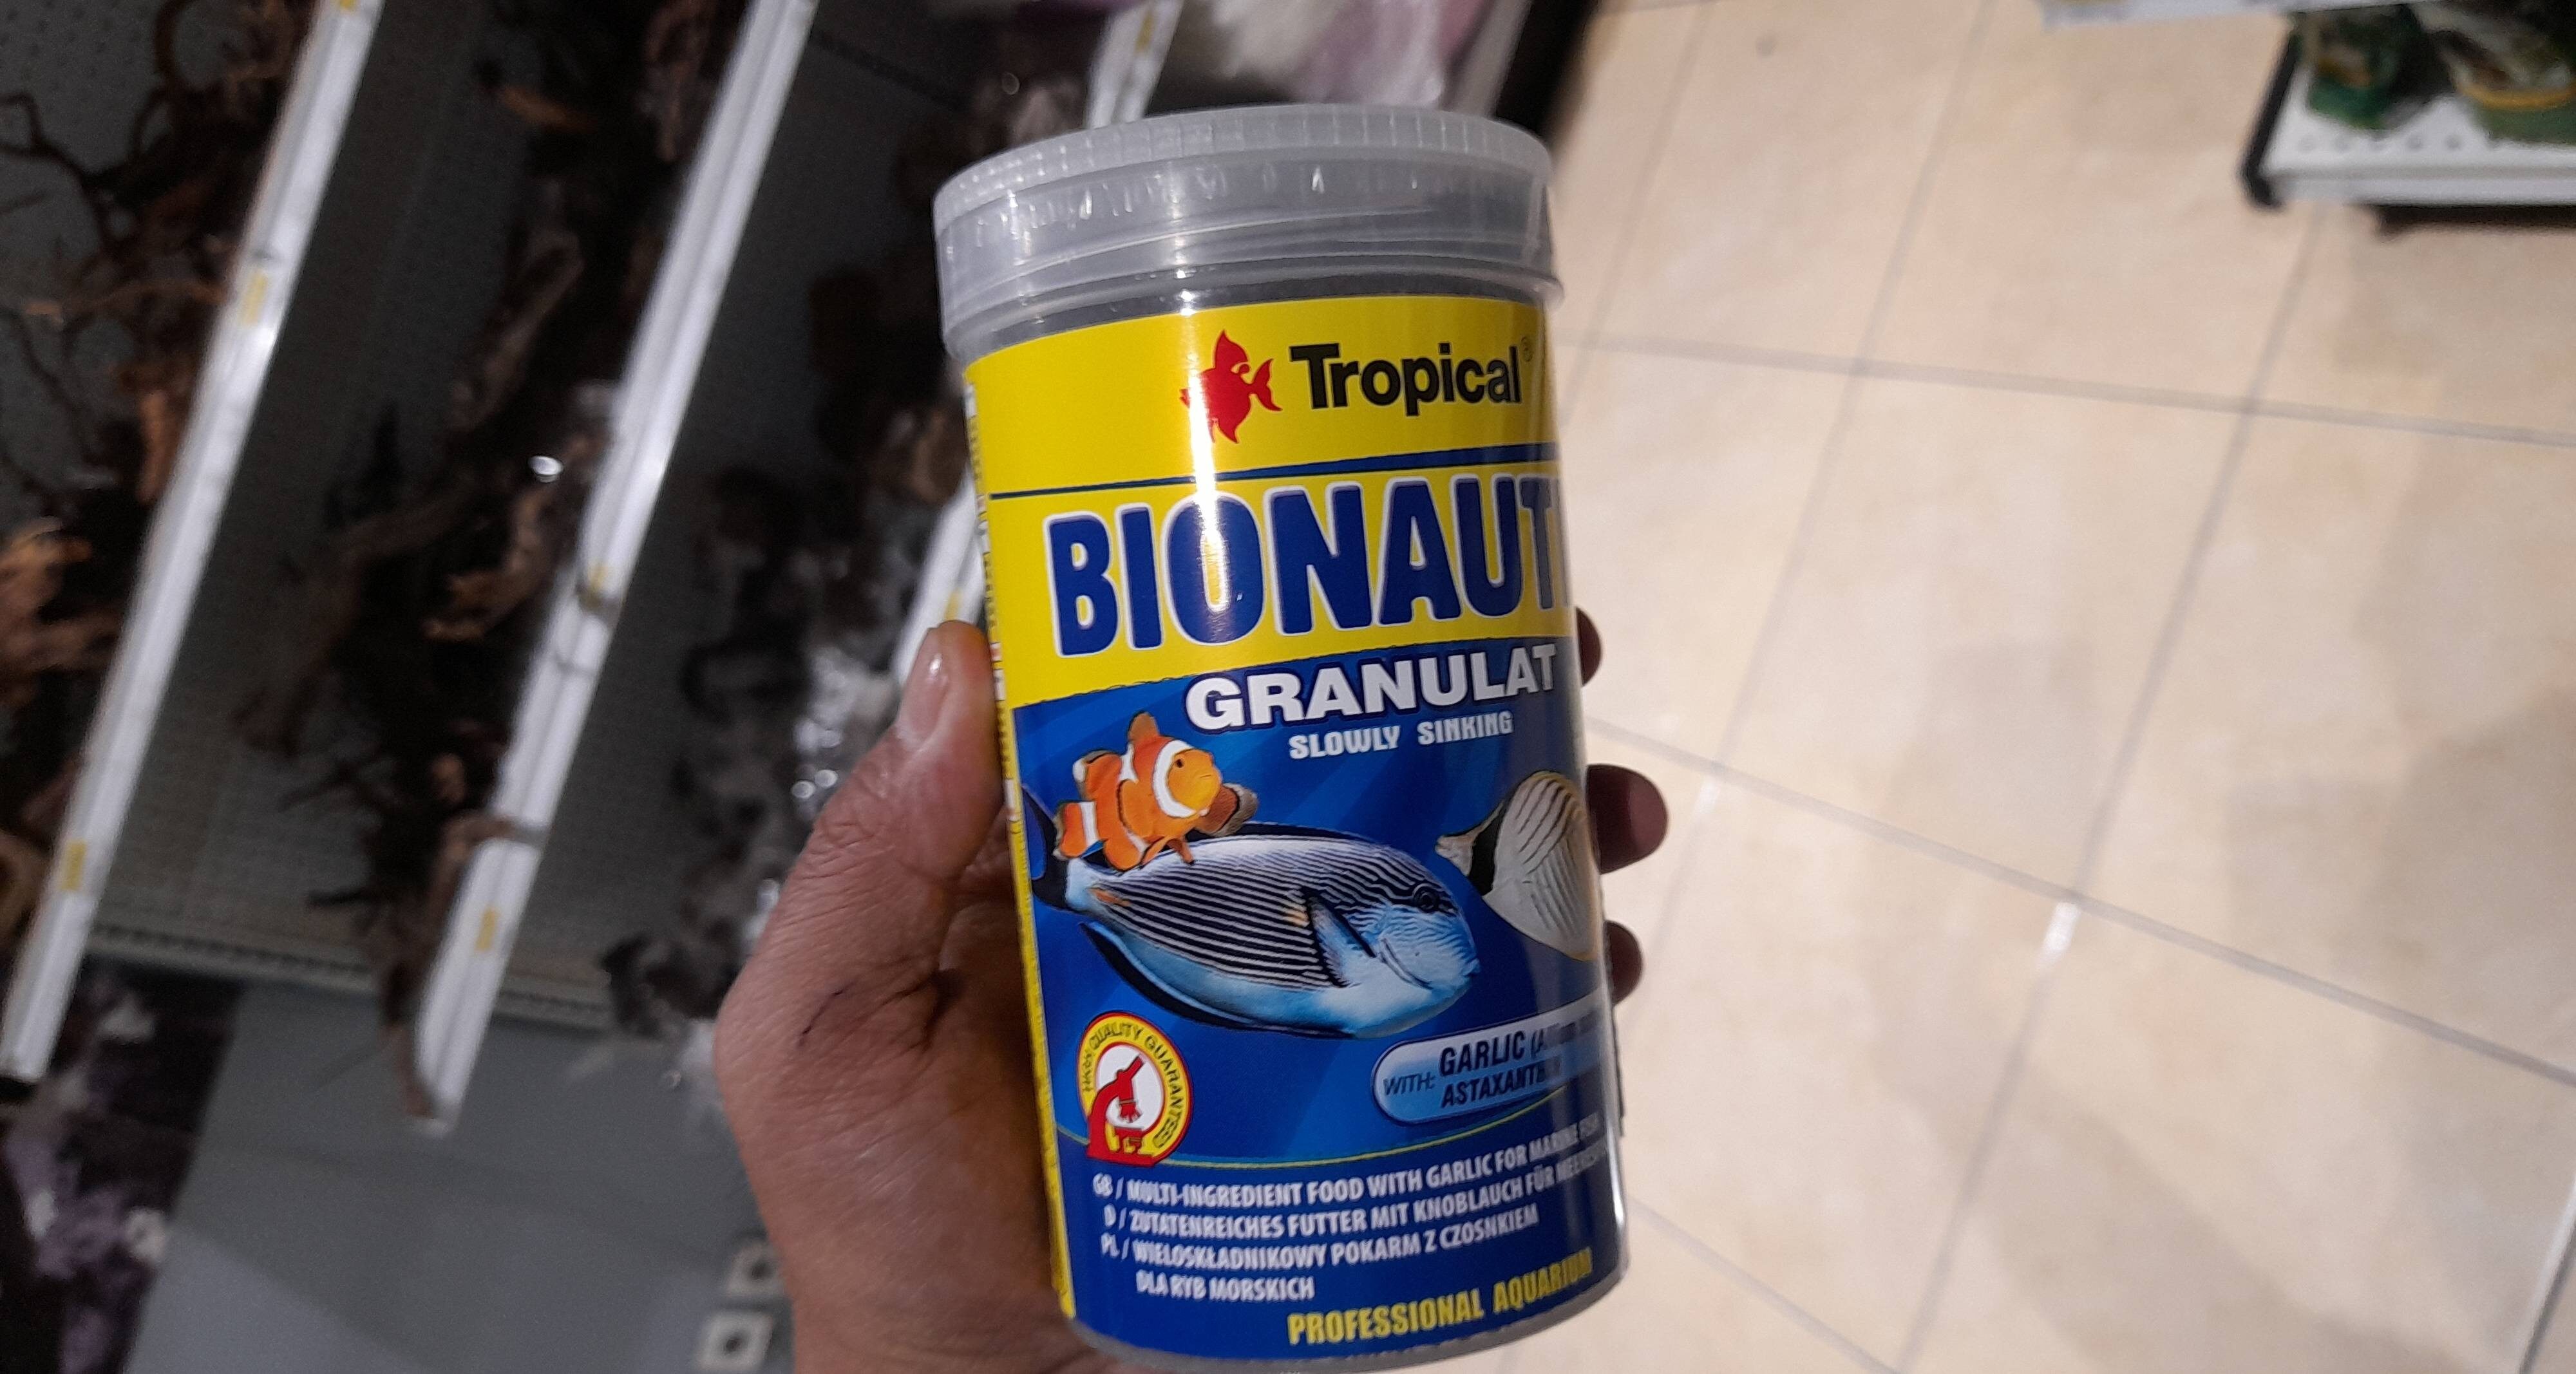 Tropical Bionautic granulat 500ml - Product - en